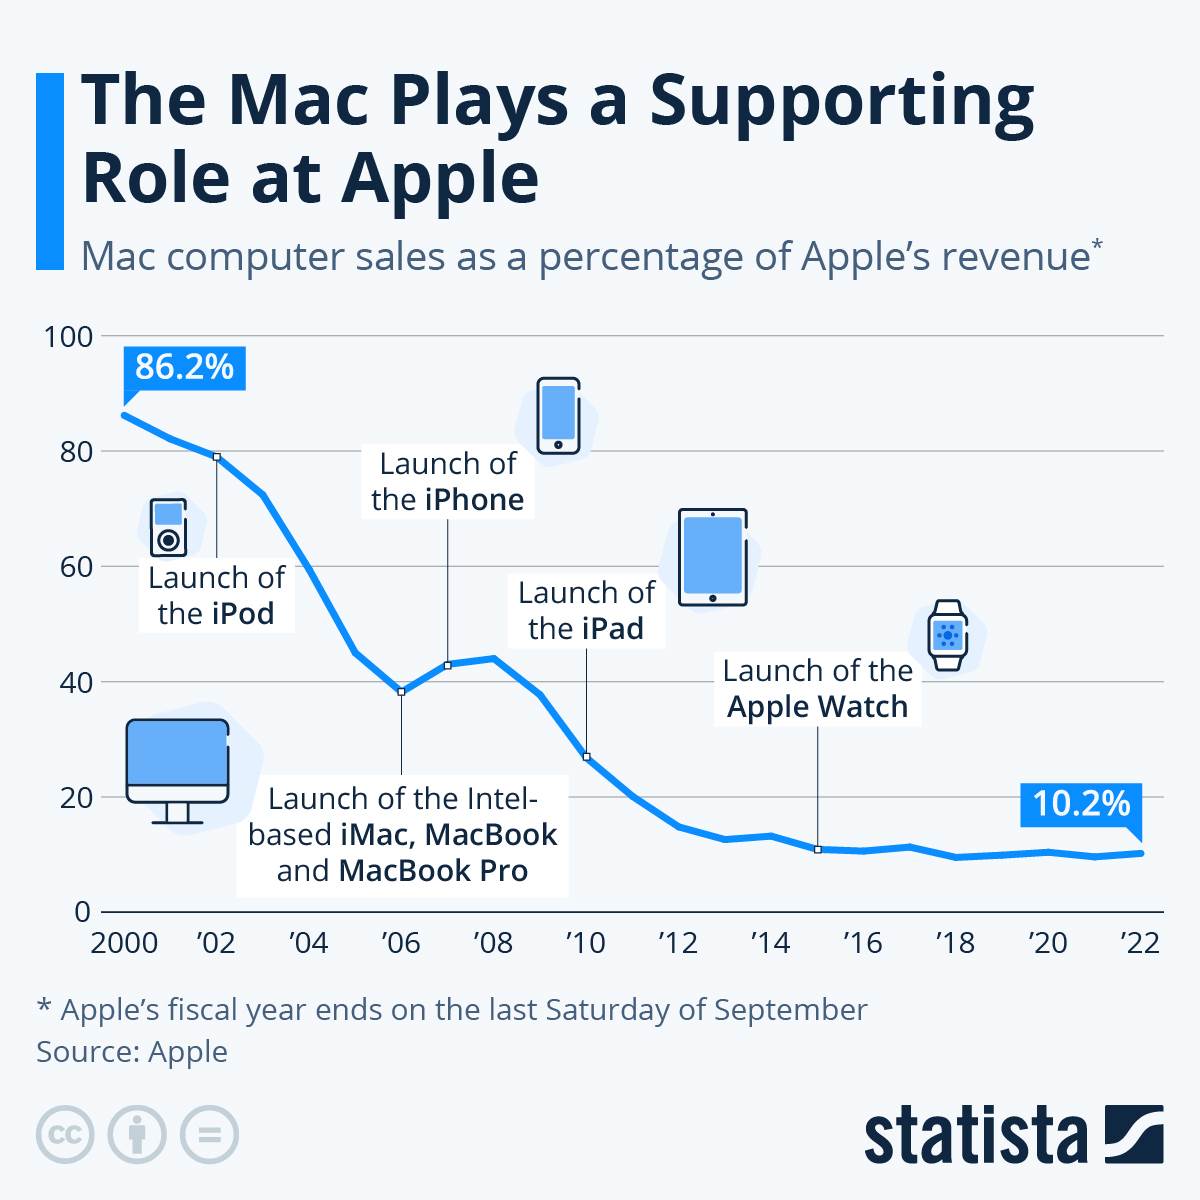  Prodaja Mac računala, kao postotak Appleovih prihoda, Statista.jpeg 